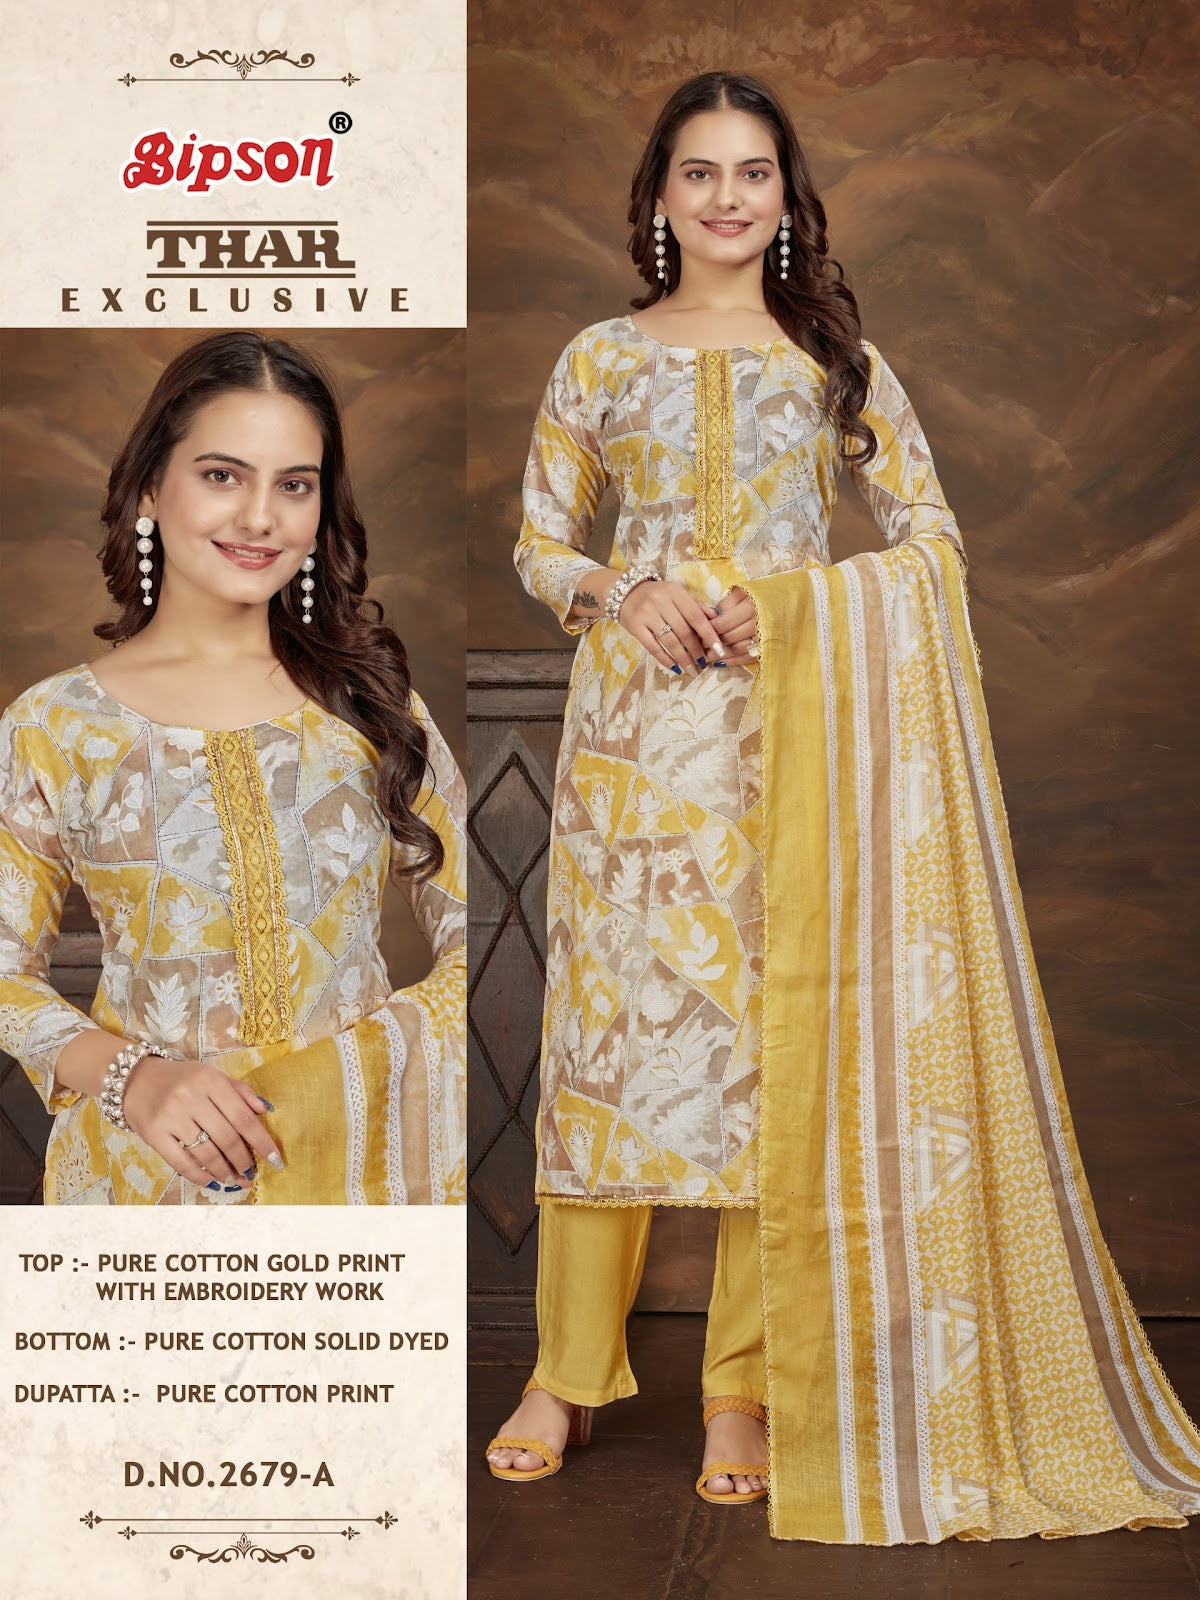 Thar 2679 Bipson Prints Pure Cotton Pant Style Suits Exporter Gujarat